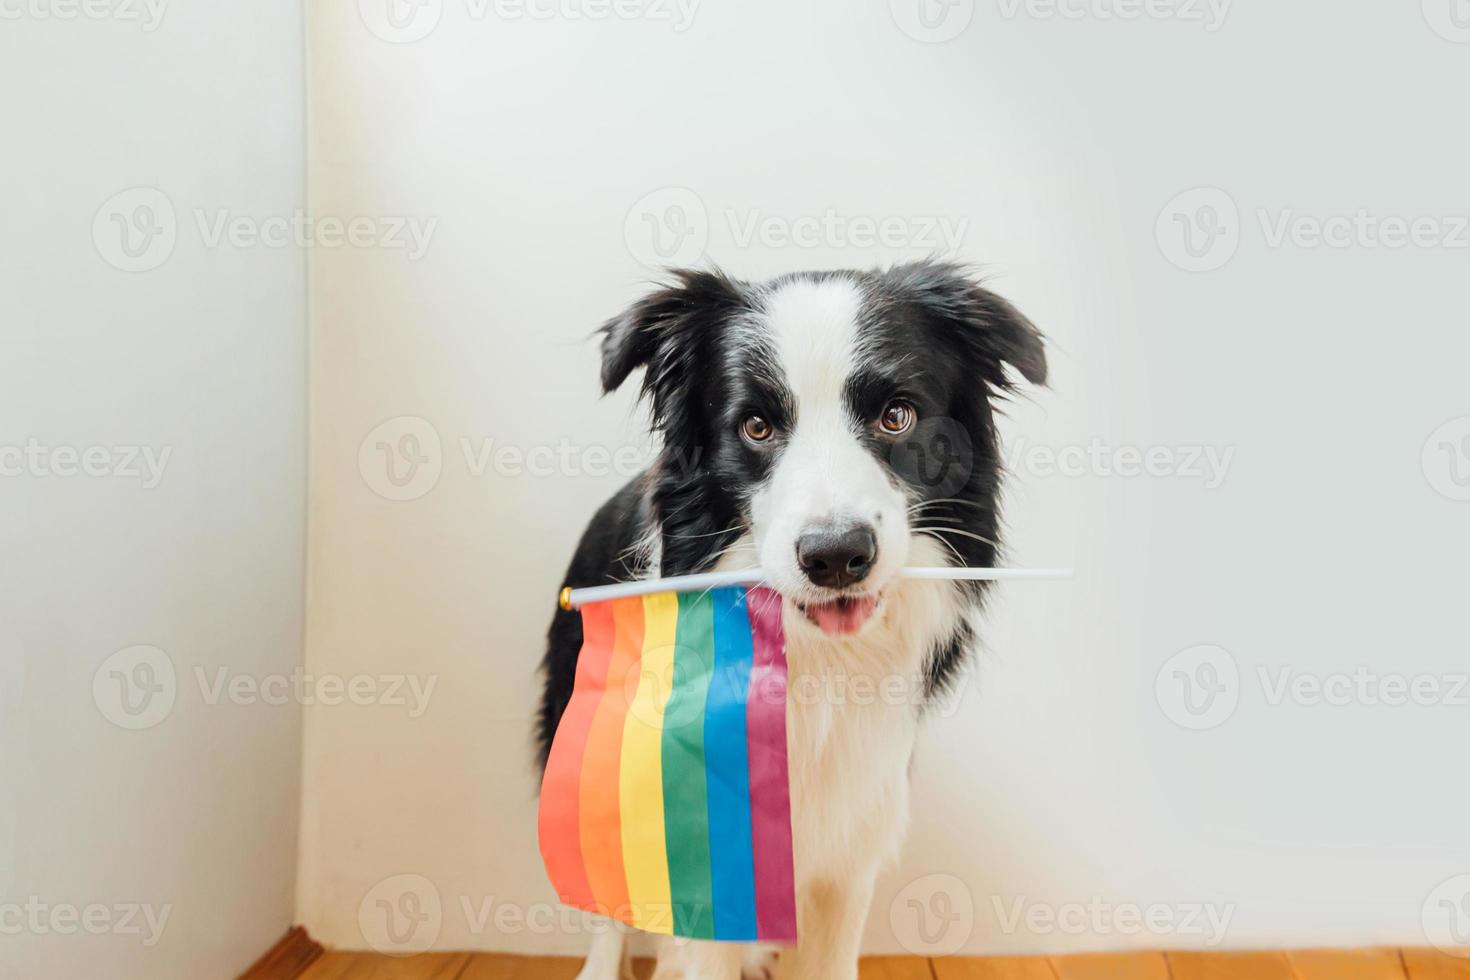 drôle mignon chiot border collie tenant le drapeau arc-en-ciel lgbt dans la bouche sur fond blanc à la maison à l'intérieur. portrait de fierté gay de chien. droits égaux pour le concept de communauté lgbtq. photo